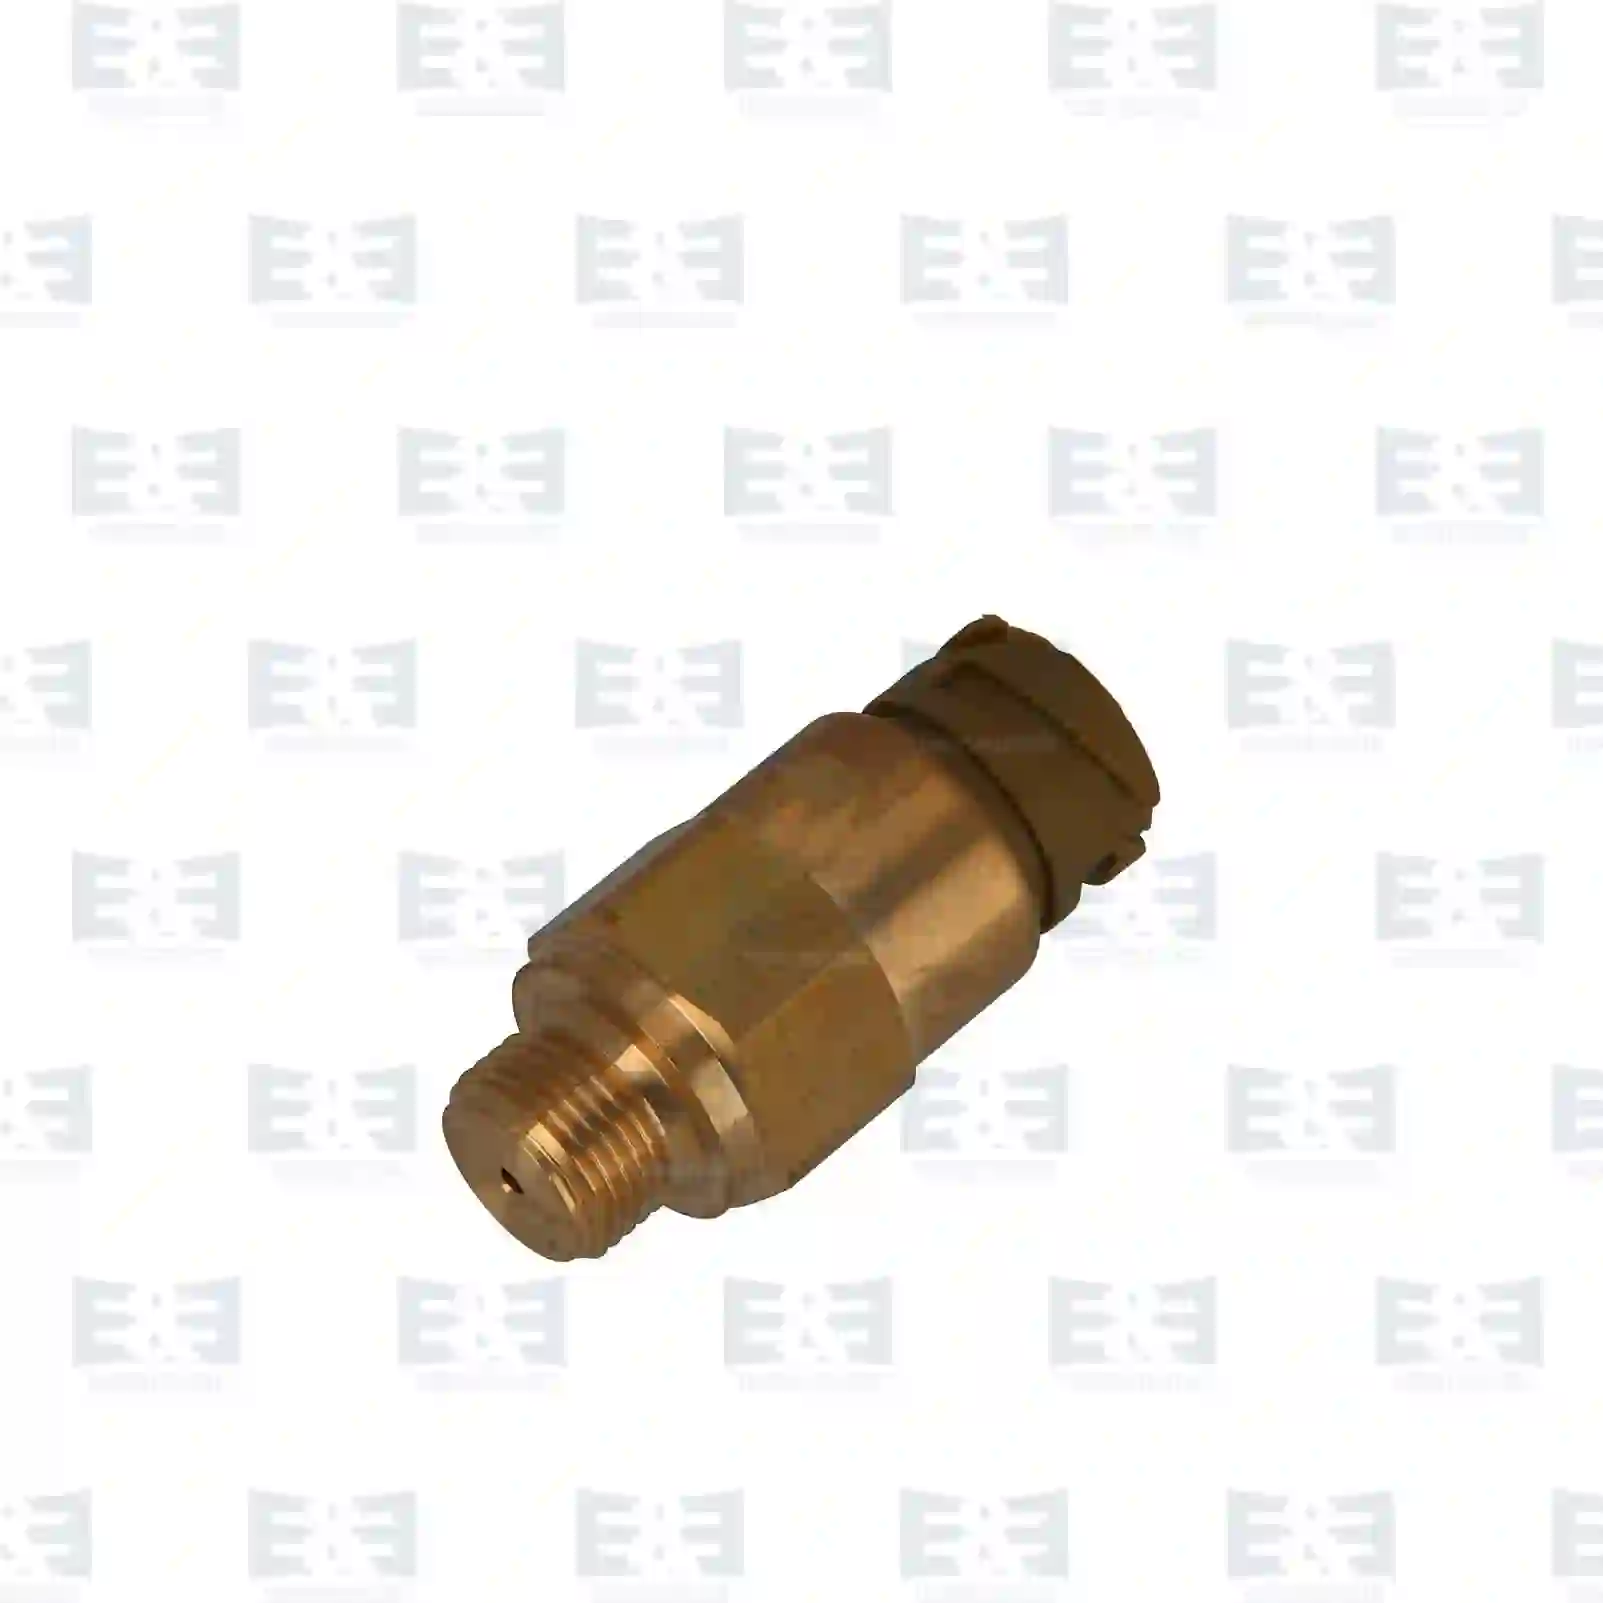 Pressure sensor, 2E2200589, 51274210247, 51274210263, 07W130758B, ZG20727-0008 ||  2E2200589 E&E Truck Spare Parts | Truck Spare Parts, Auotomotive Spare Parts Pressure sensor, 2E2200589, 51274210247, 51274210263, 07W130758B, ZG20727-0008 ||  2E2200589 E&E Truck Spare Parts | Truck Spare Parts, Auotomotive Spare Parts